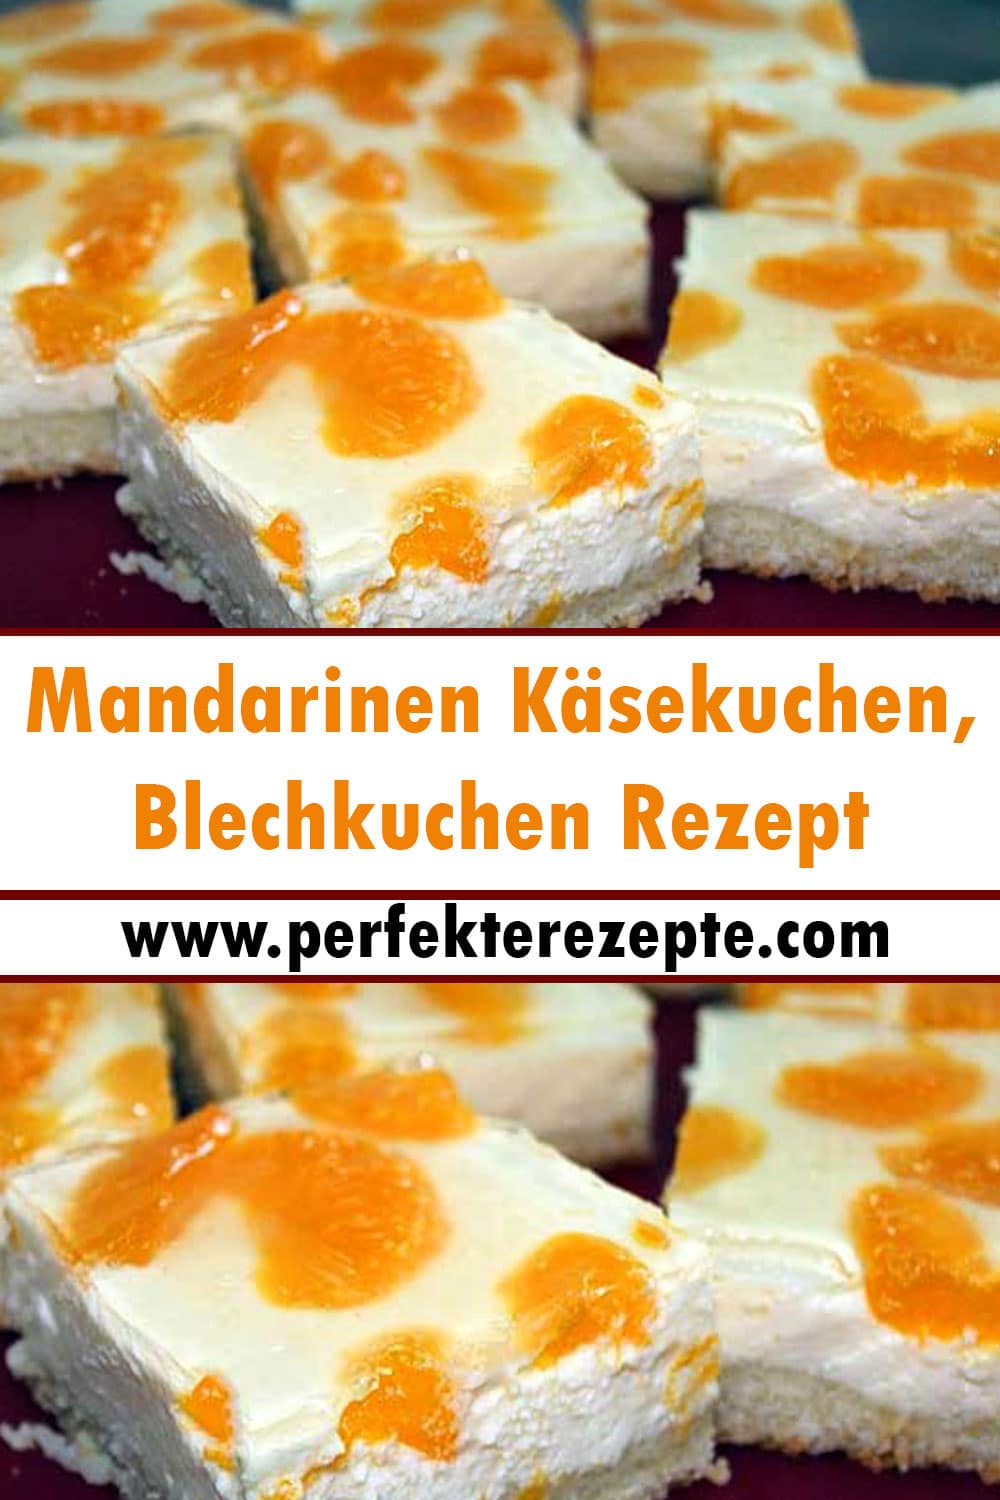 Mandarinen Käsekuchen, Blechkuchen Rezept